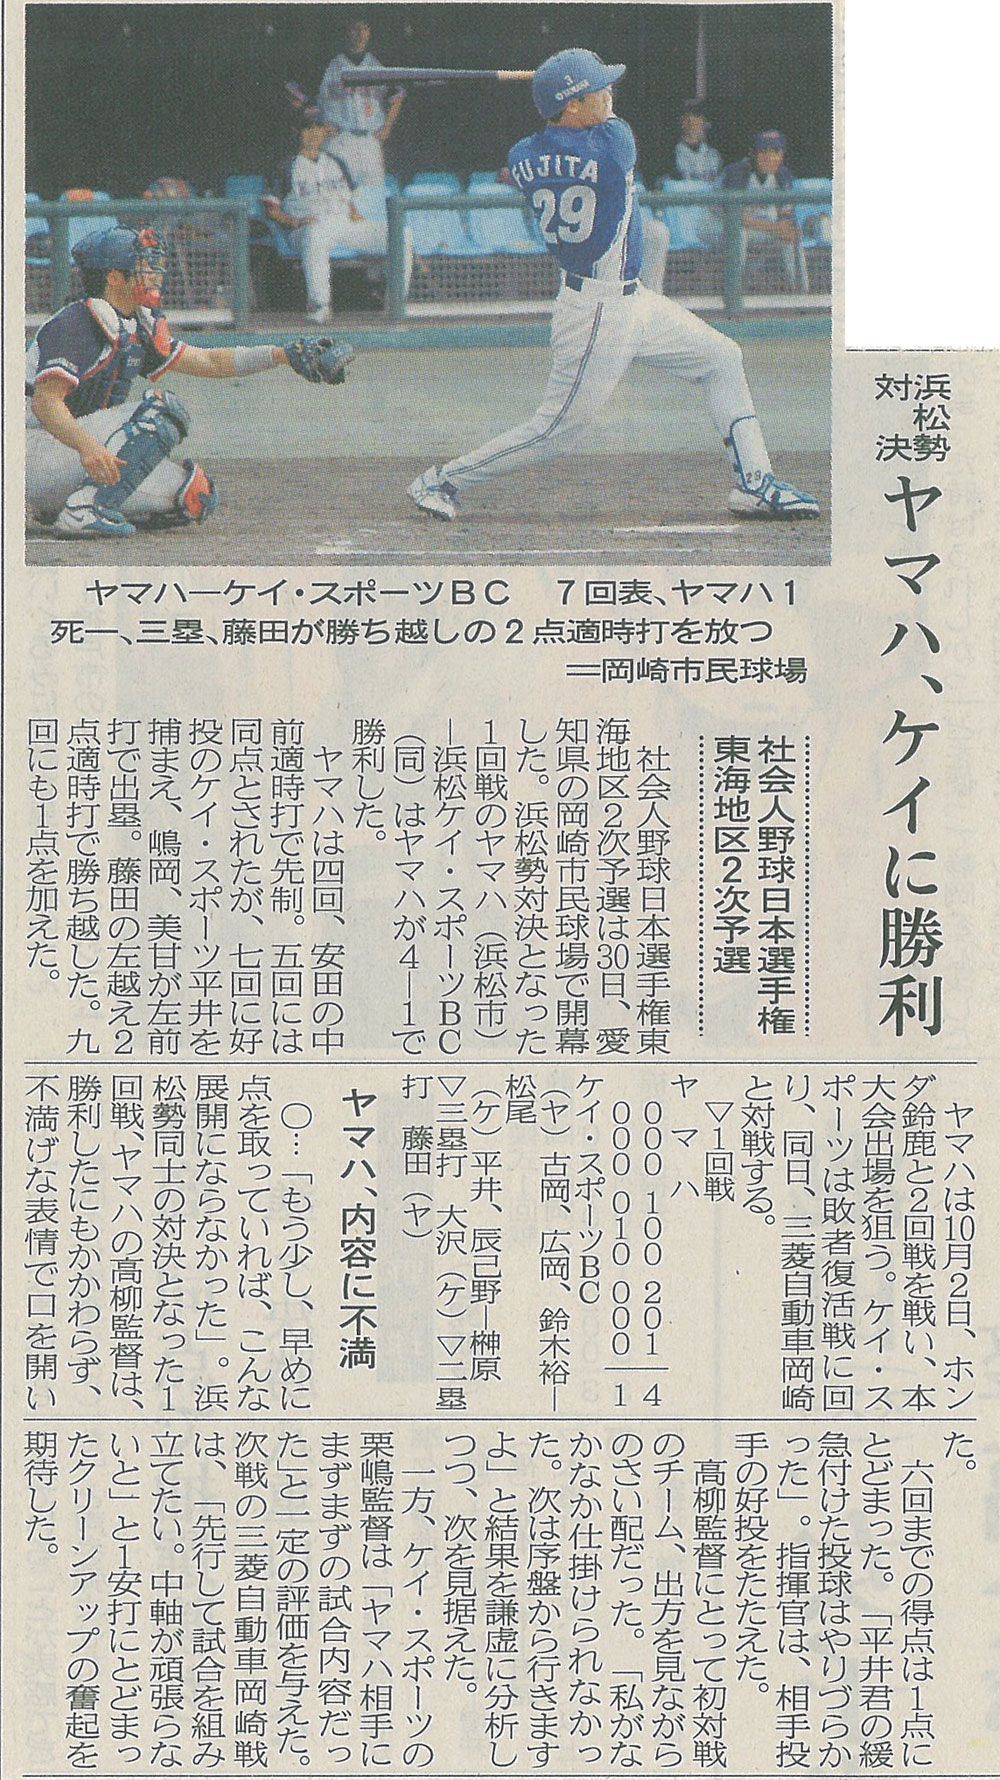 社会人野球日本選手権東海地区2次予選